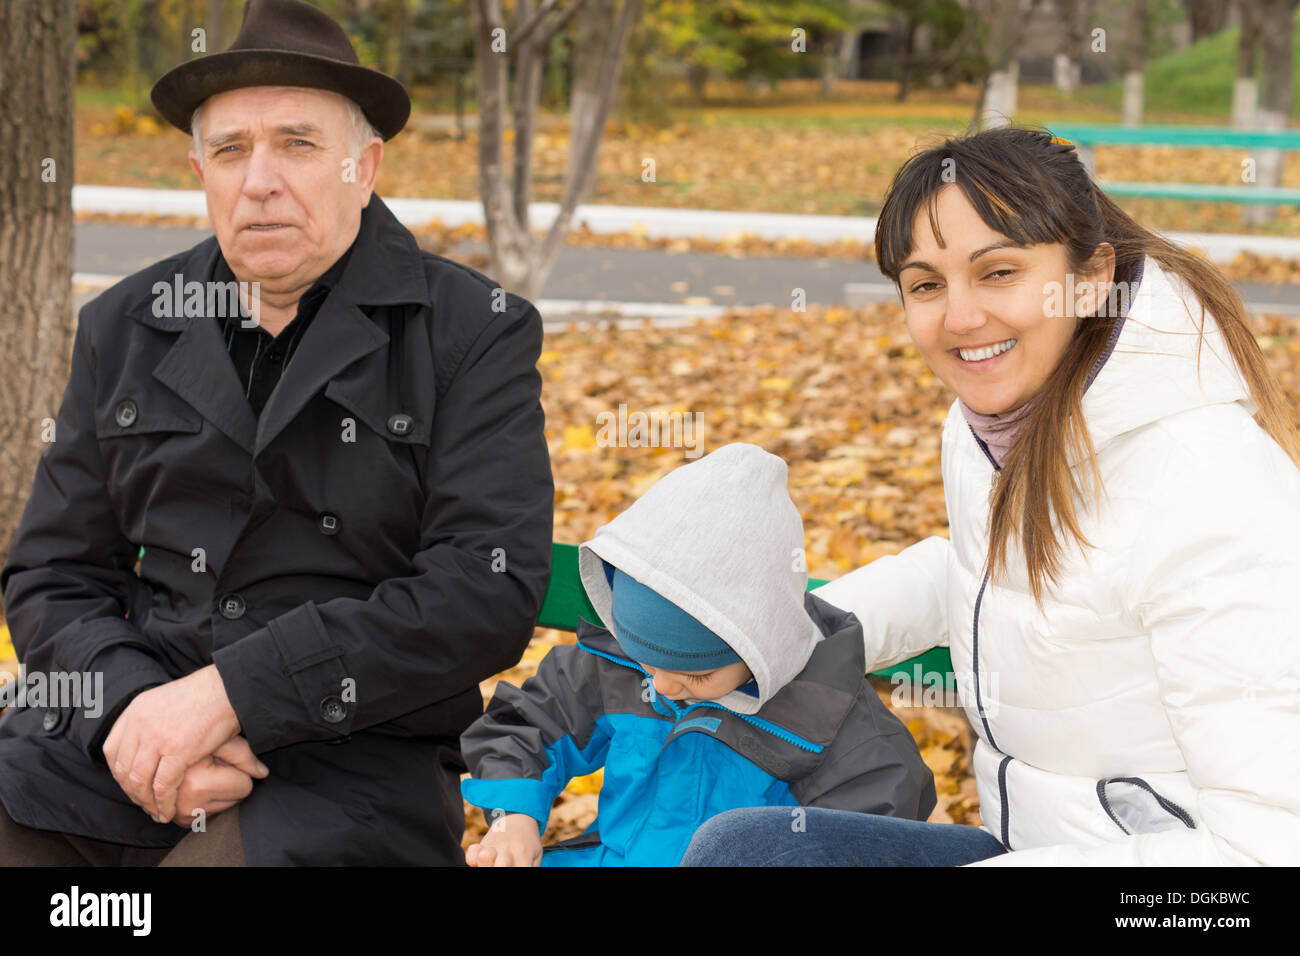 Smiling friendly femme assise sur un banc de parc en bois avec son jeune fils et père âgé comme ils jouissent d'un jour d'automne dans l'air frais. Banque D'Images